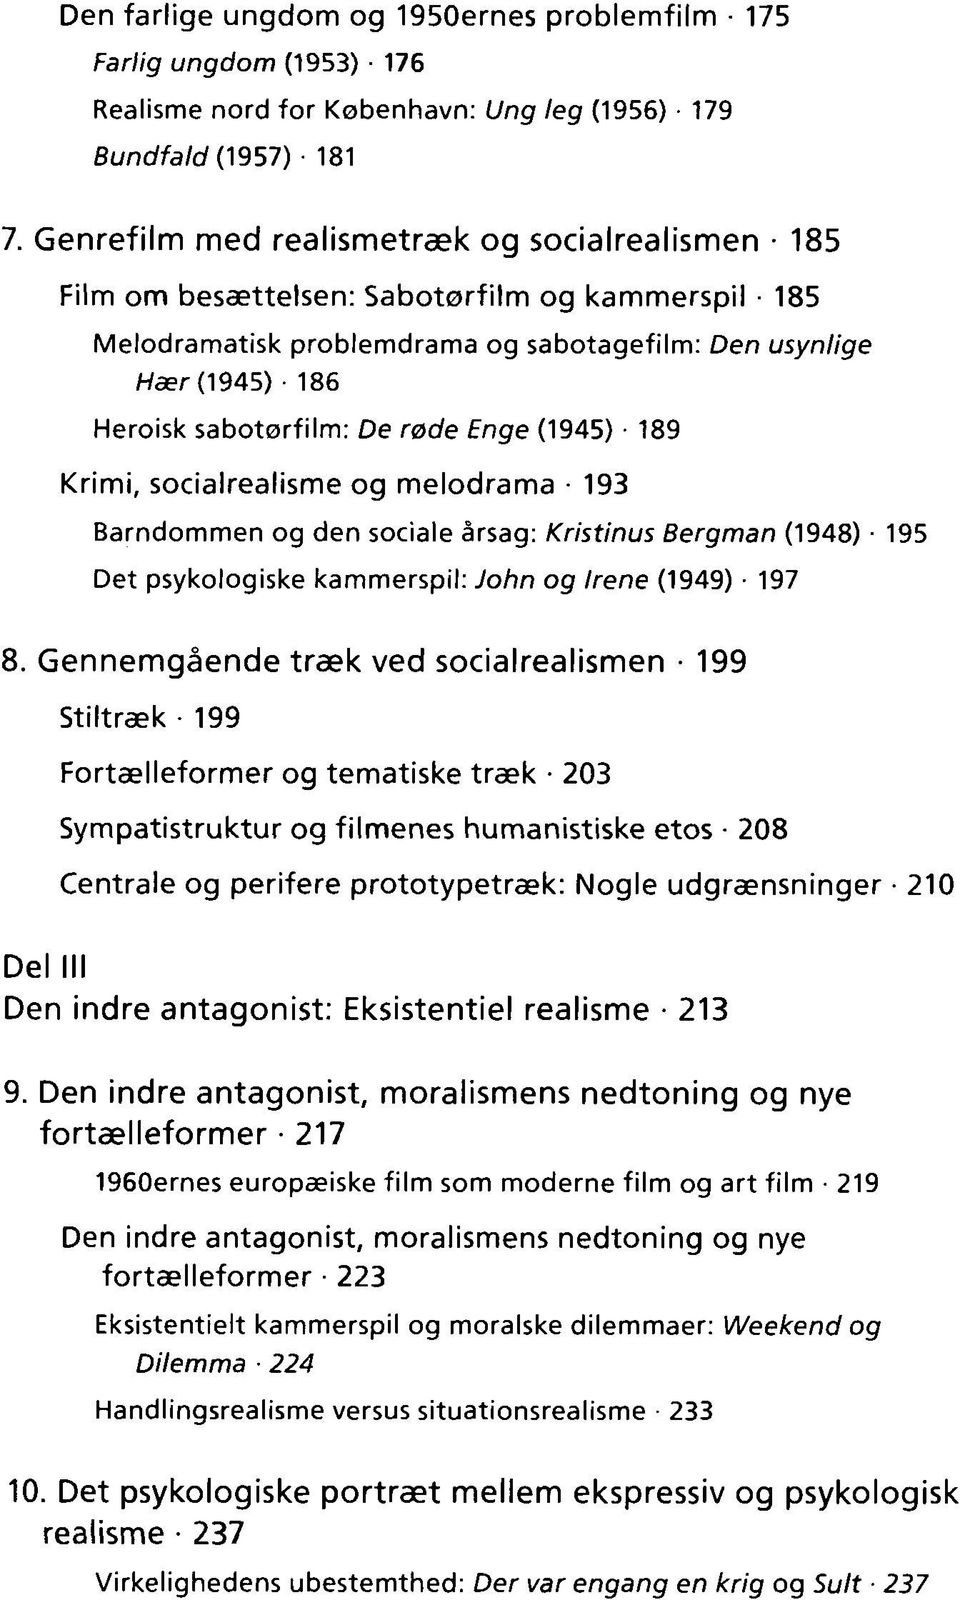 røde Enge (1945) 189 Krimi, socialrealisme og melodrama 193 Barndommen og den sociale årsag: Kristinus Bergman (1948) 195 Det psykologiske kammerspil: John og Irene (1949) 197 8.